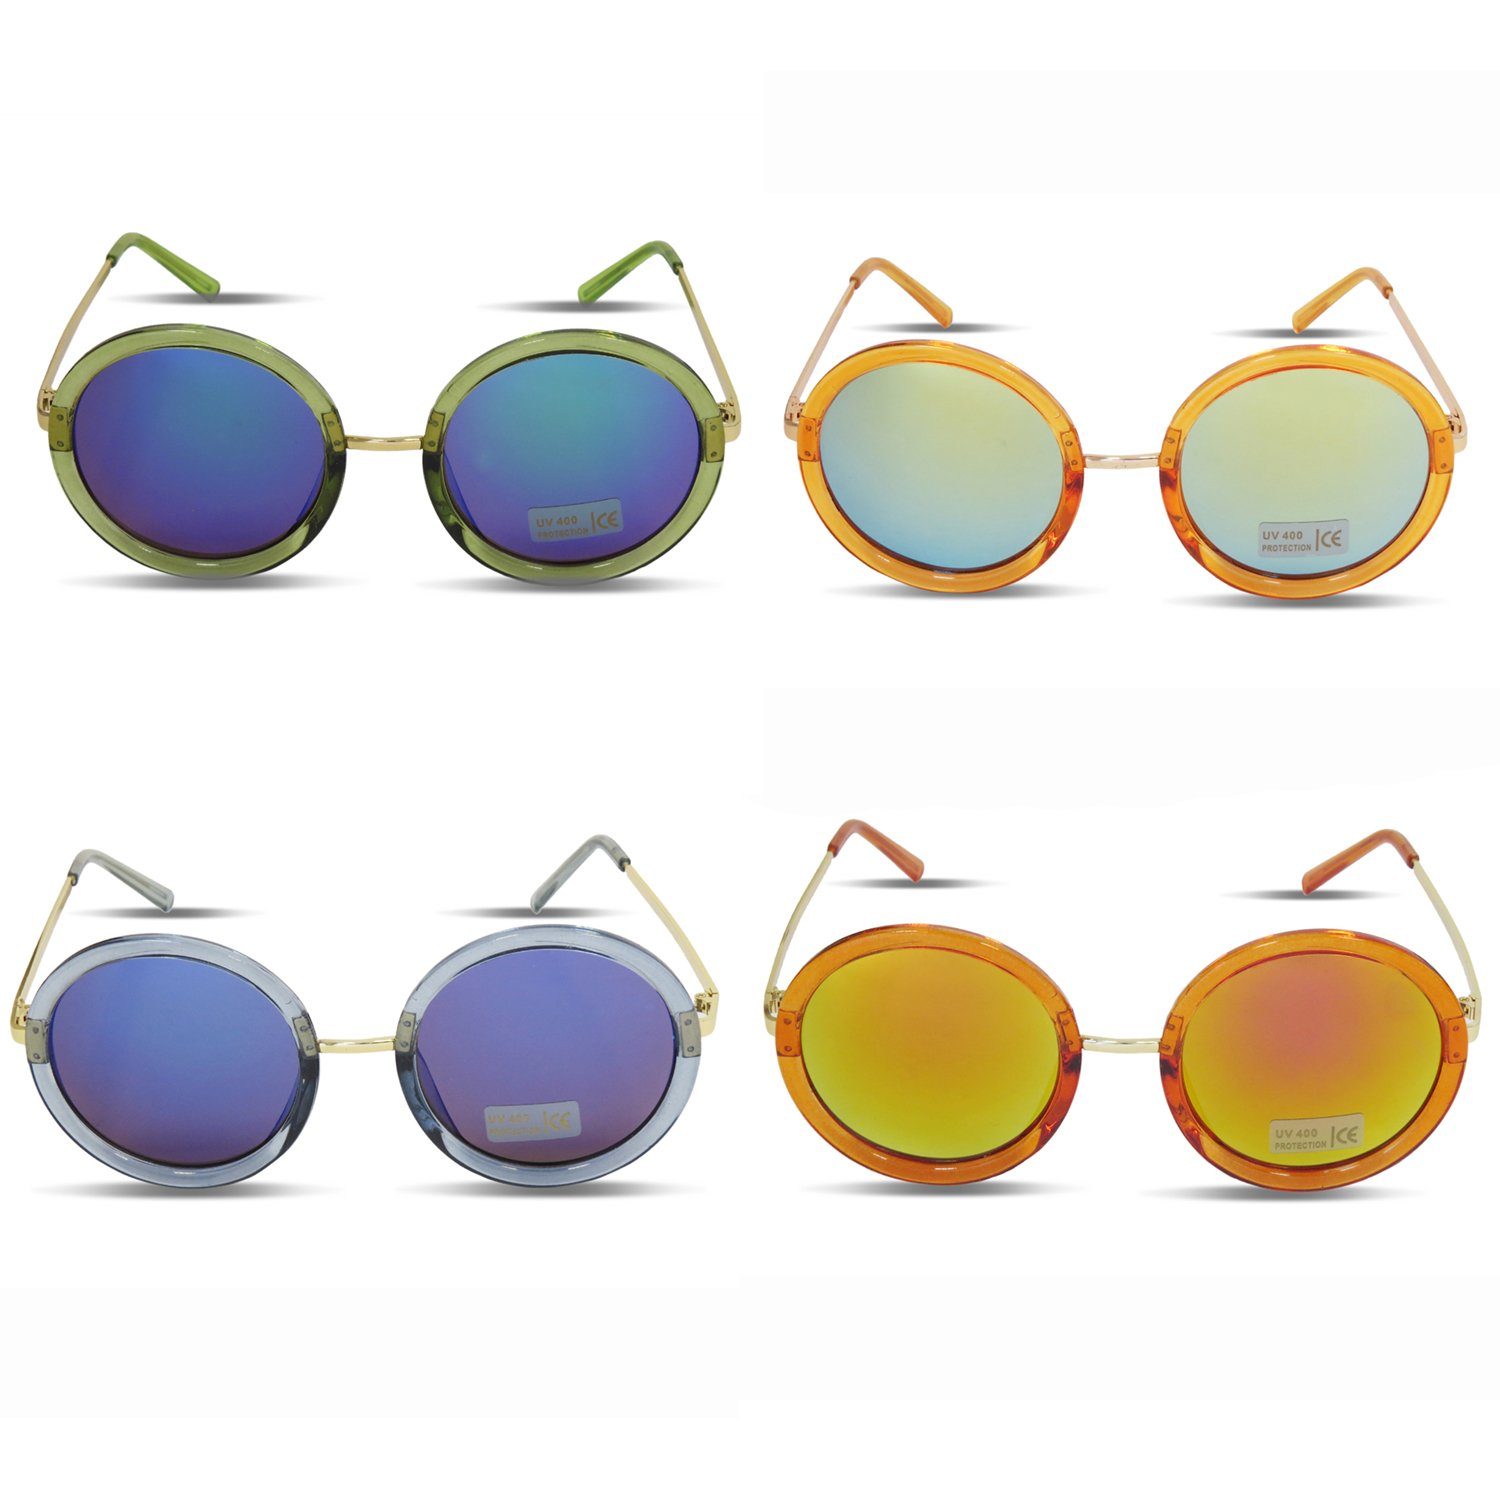 Sonia Originelli blau Damen Sonnenbrille Verspiegelt Sonnenbrille Onesize Rund Trend Sommer